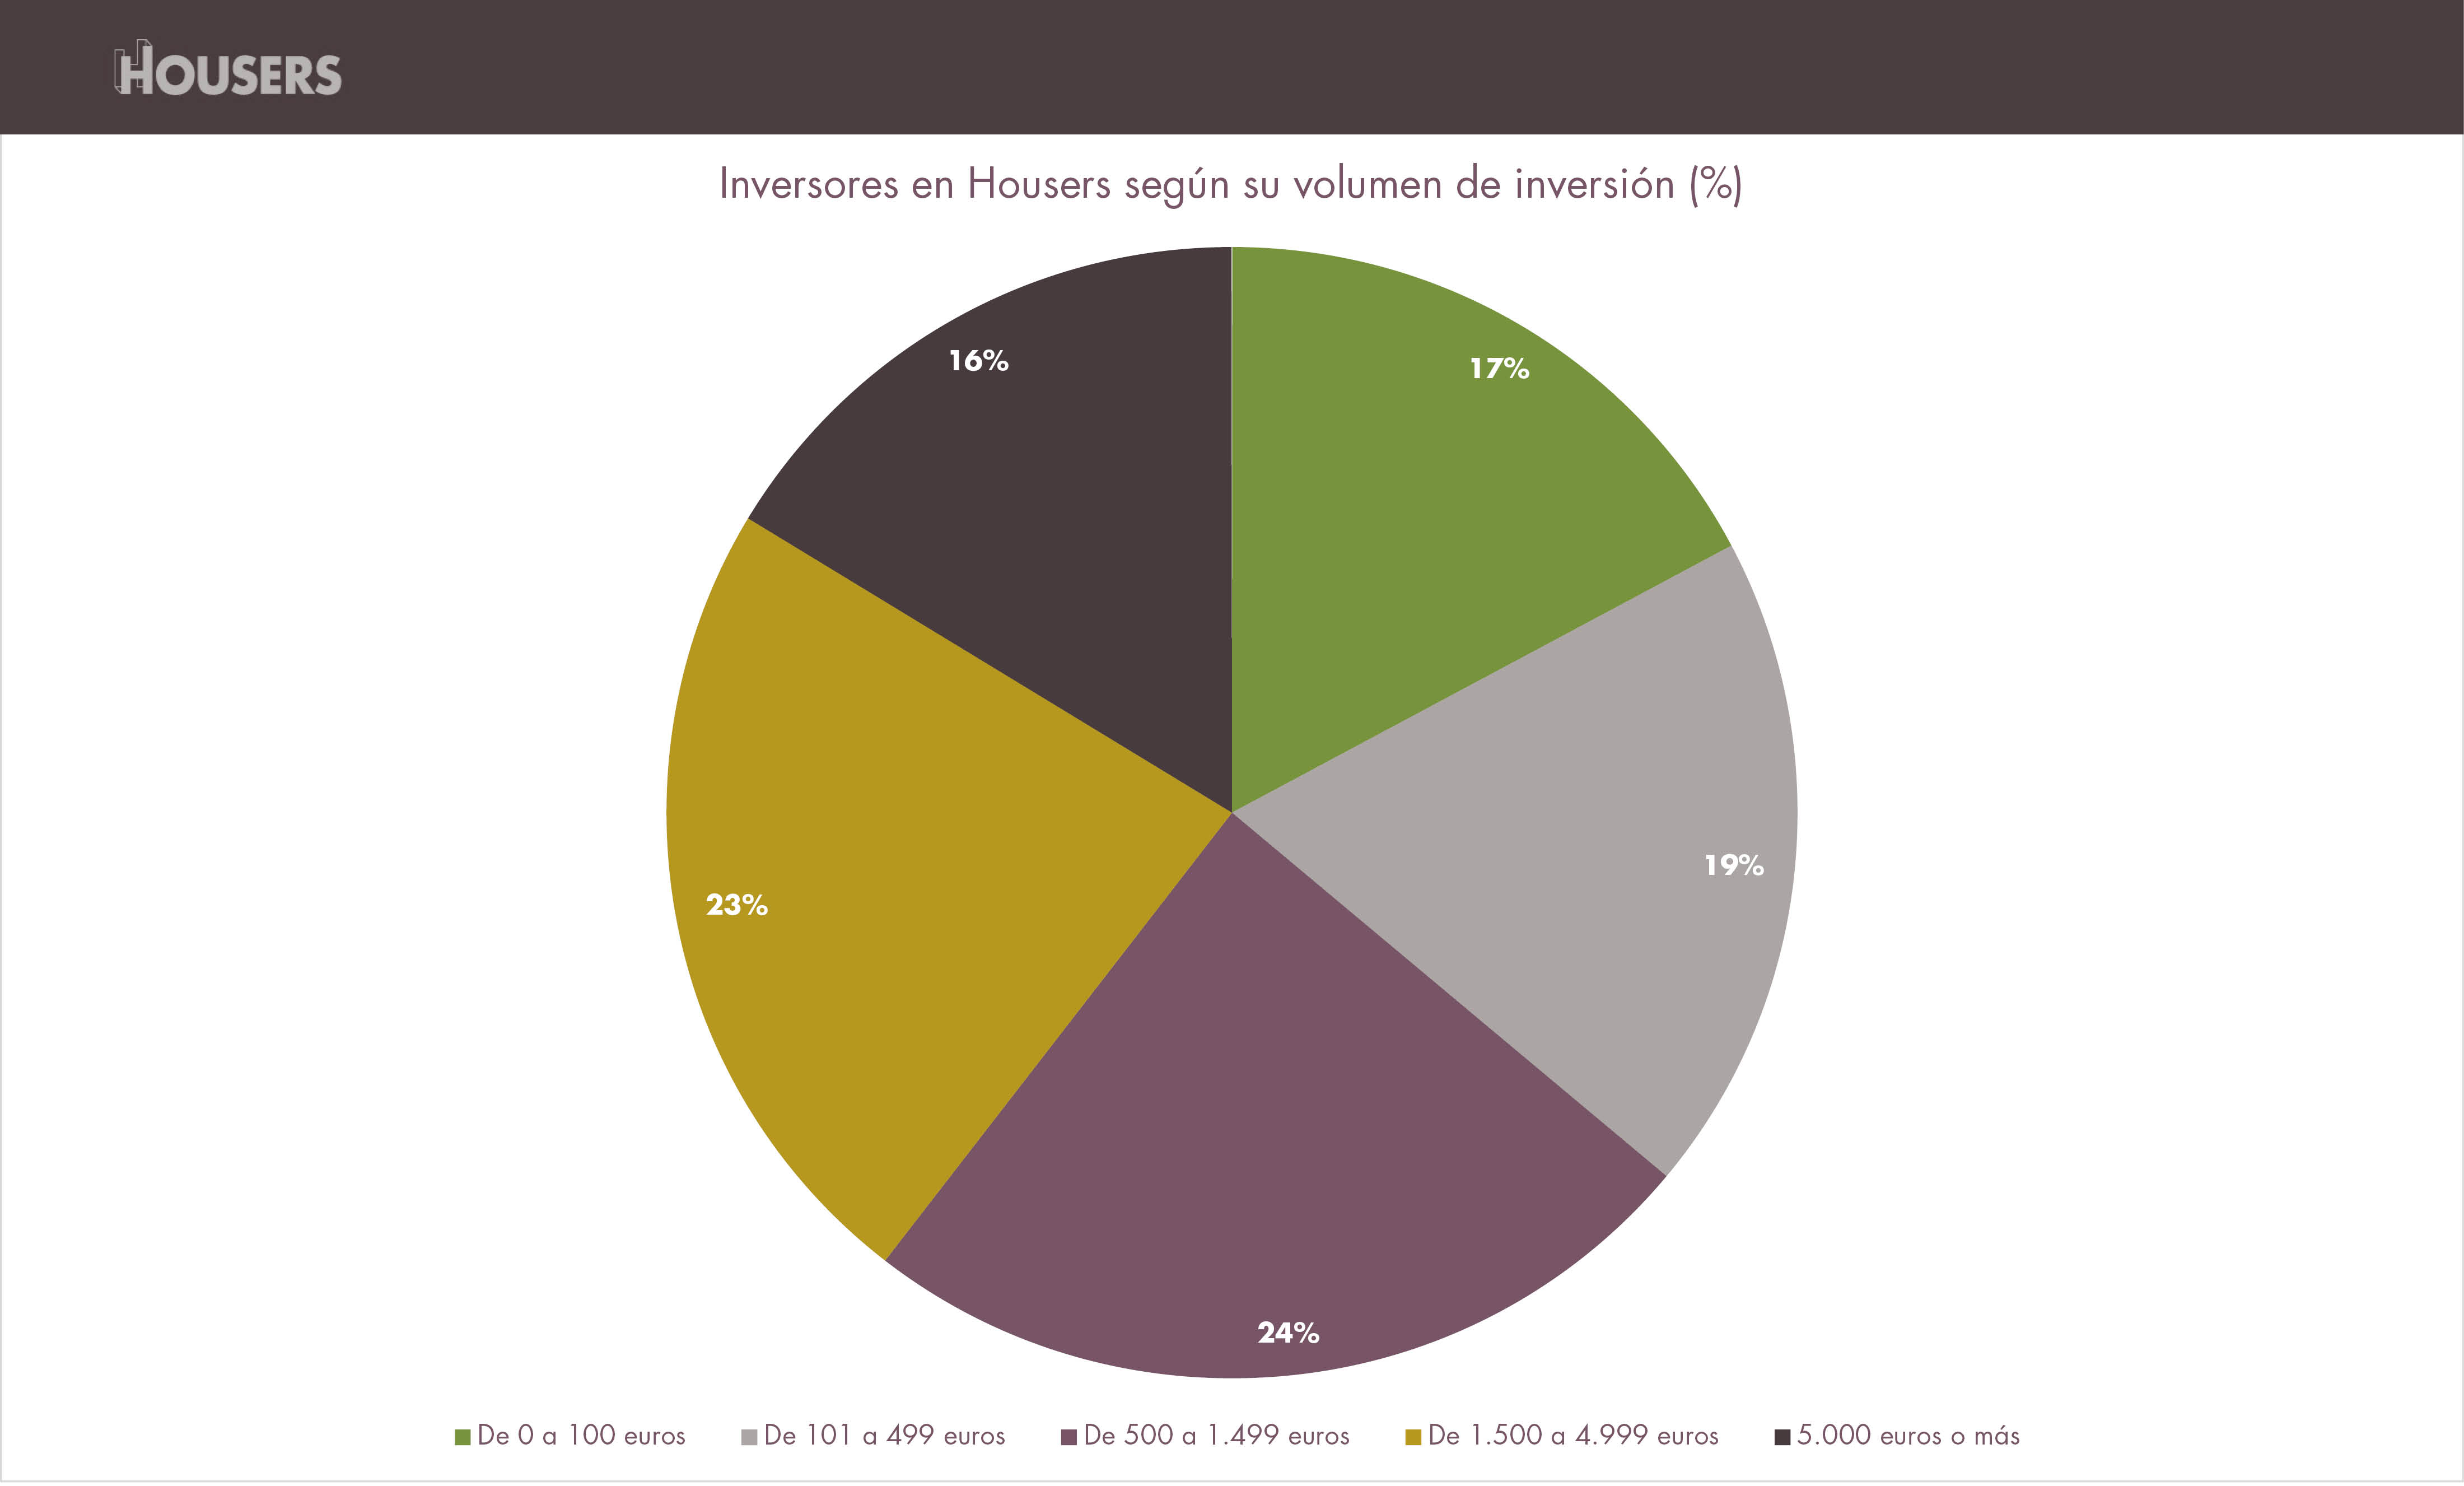 opiniones housers inversores segun volumen de inversion enero 2017 estadisticas housers